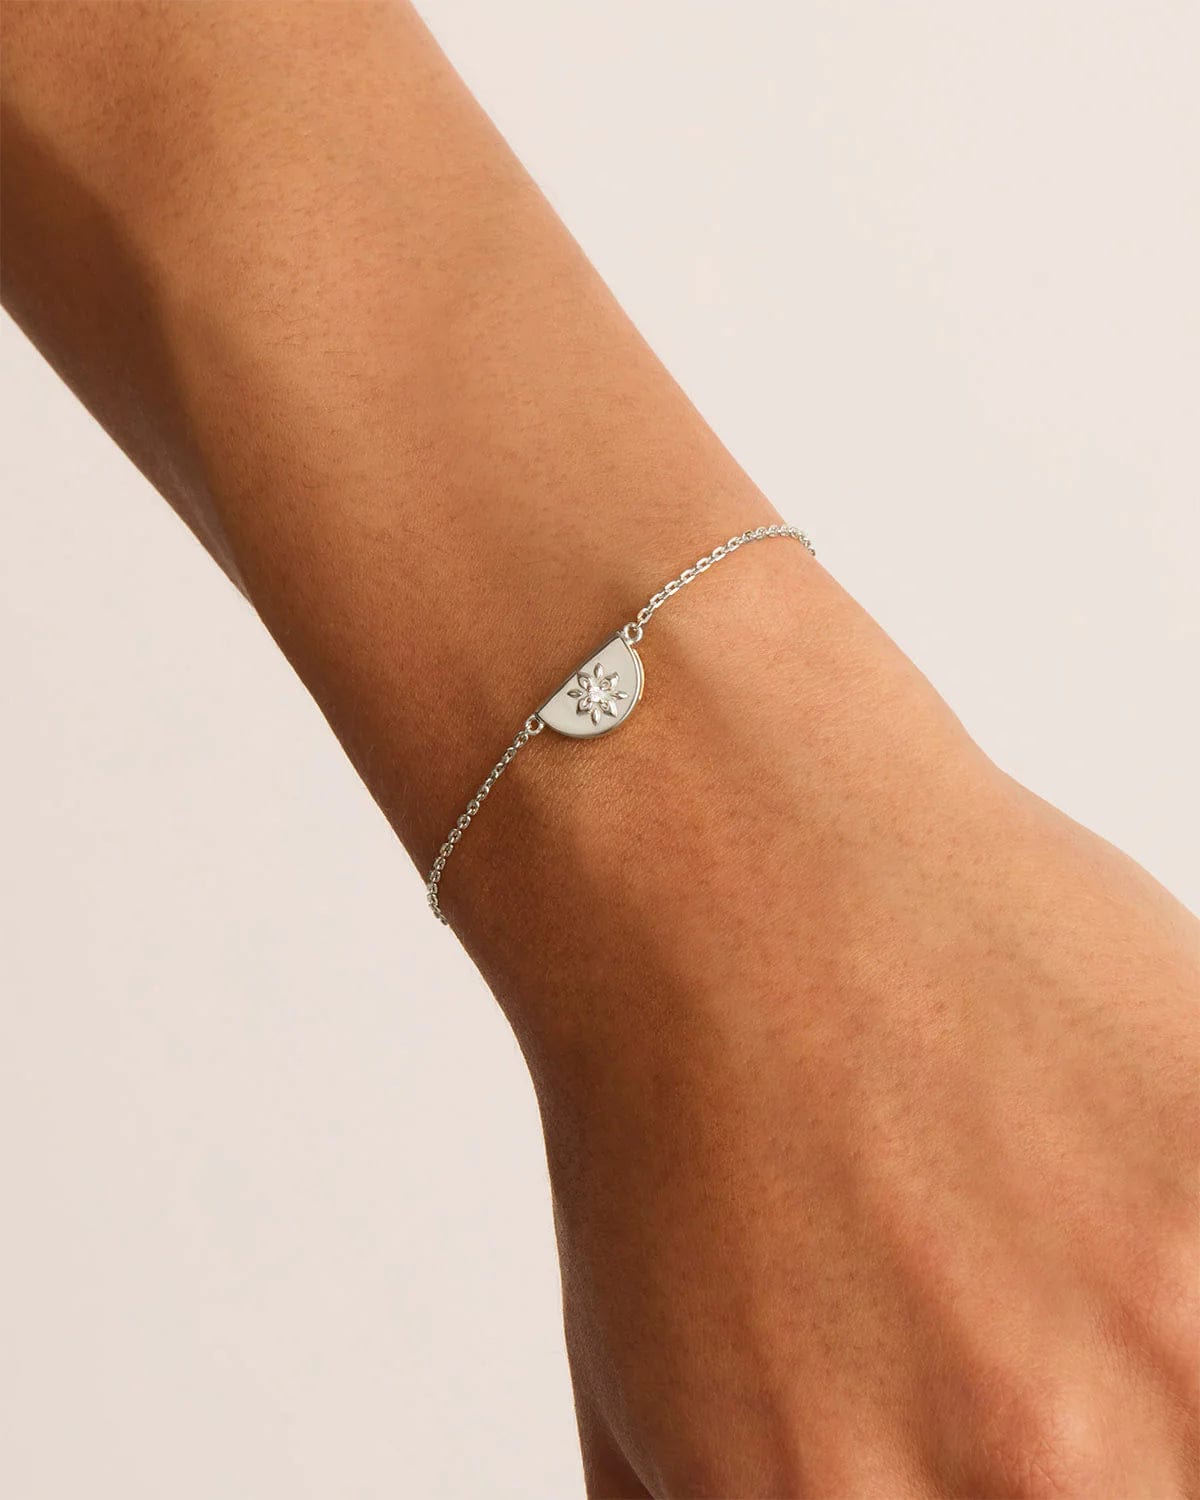 By Charlotte Bracelets By Charlotte | Lotus Bracelet - Sterling Silver